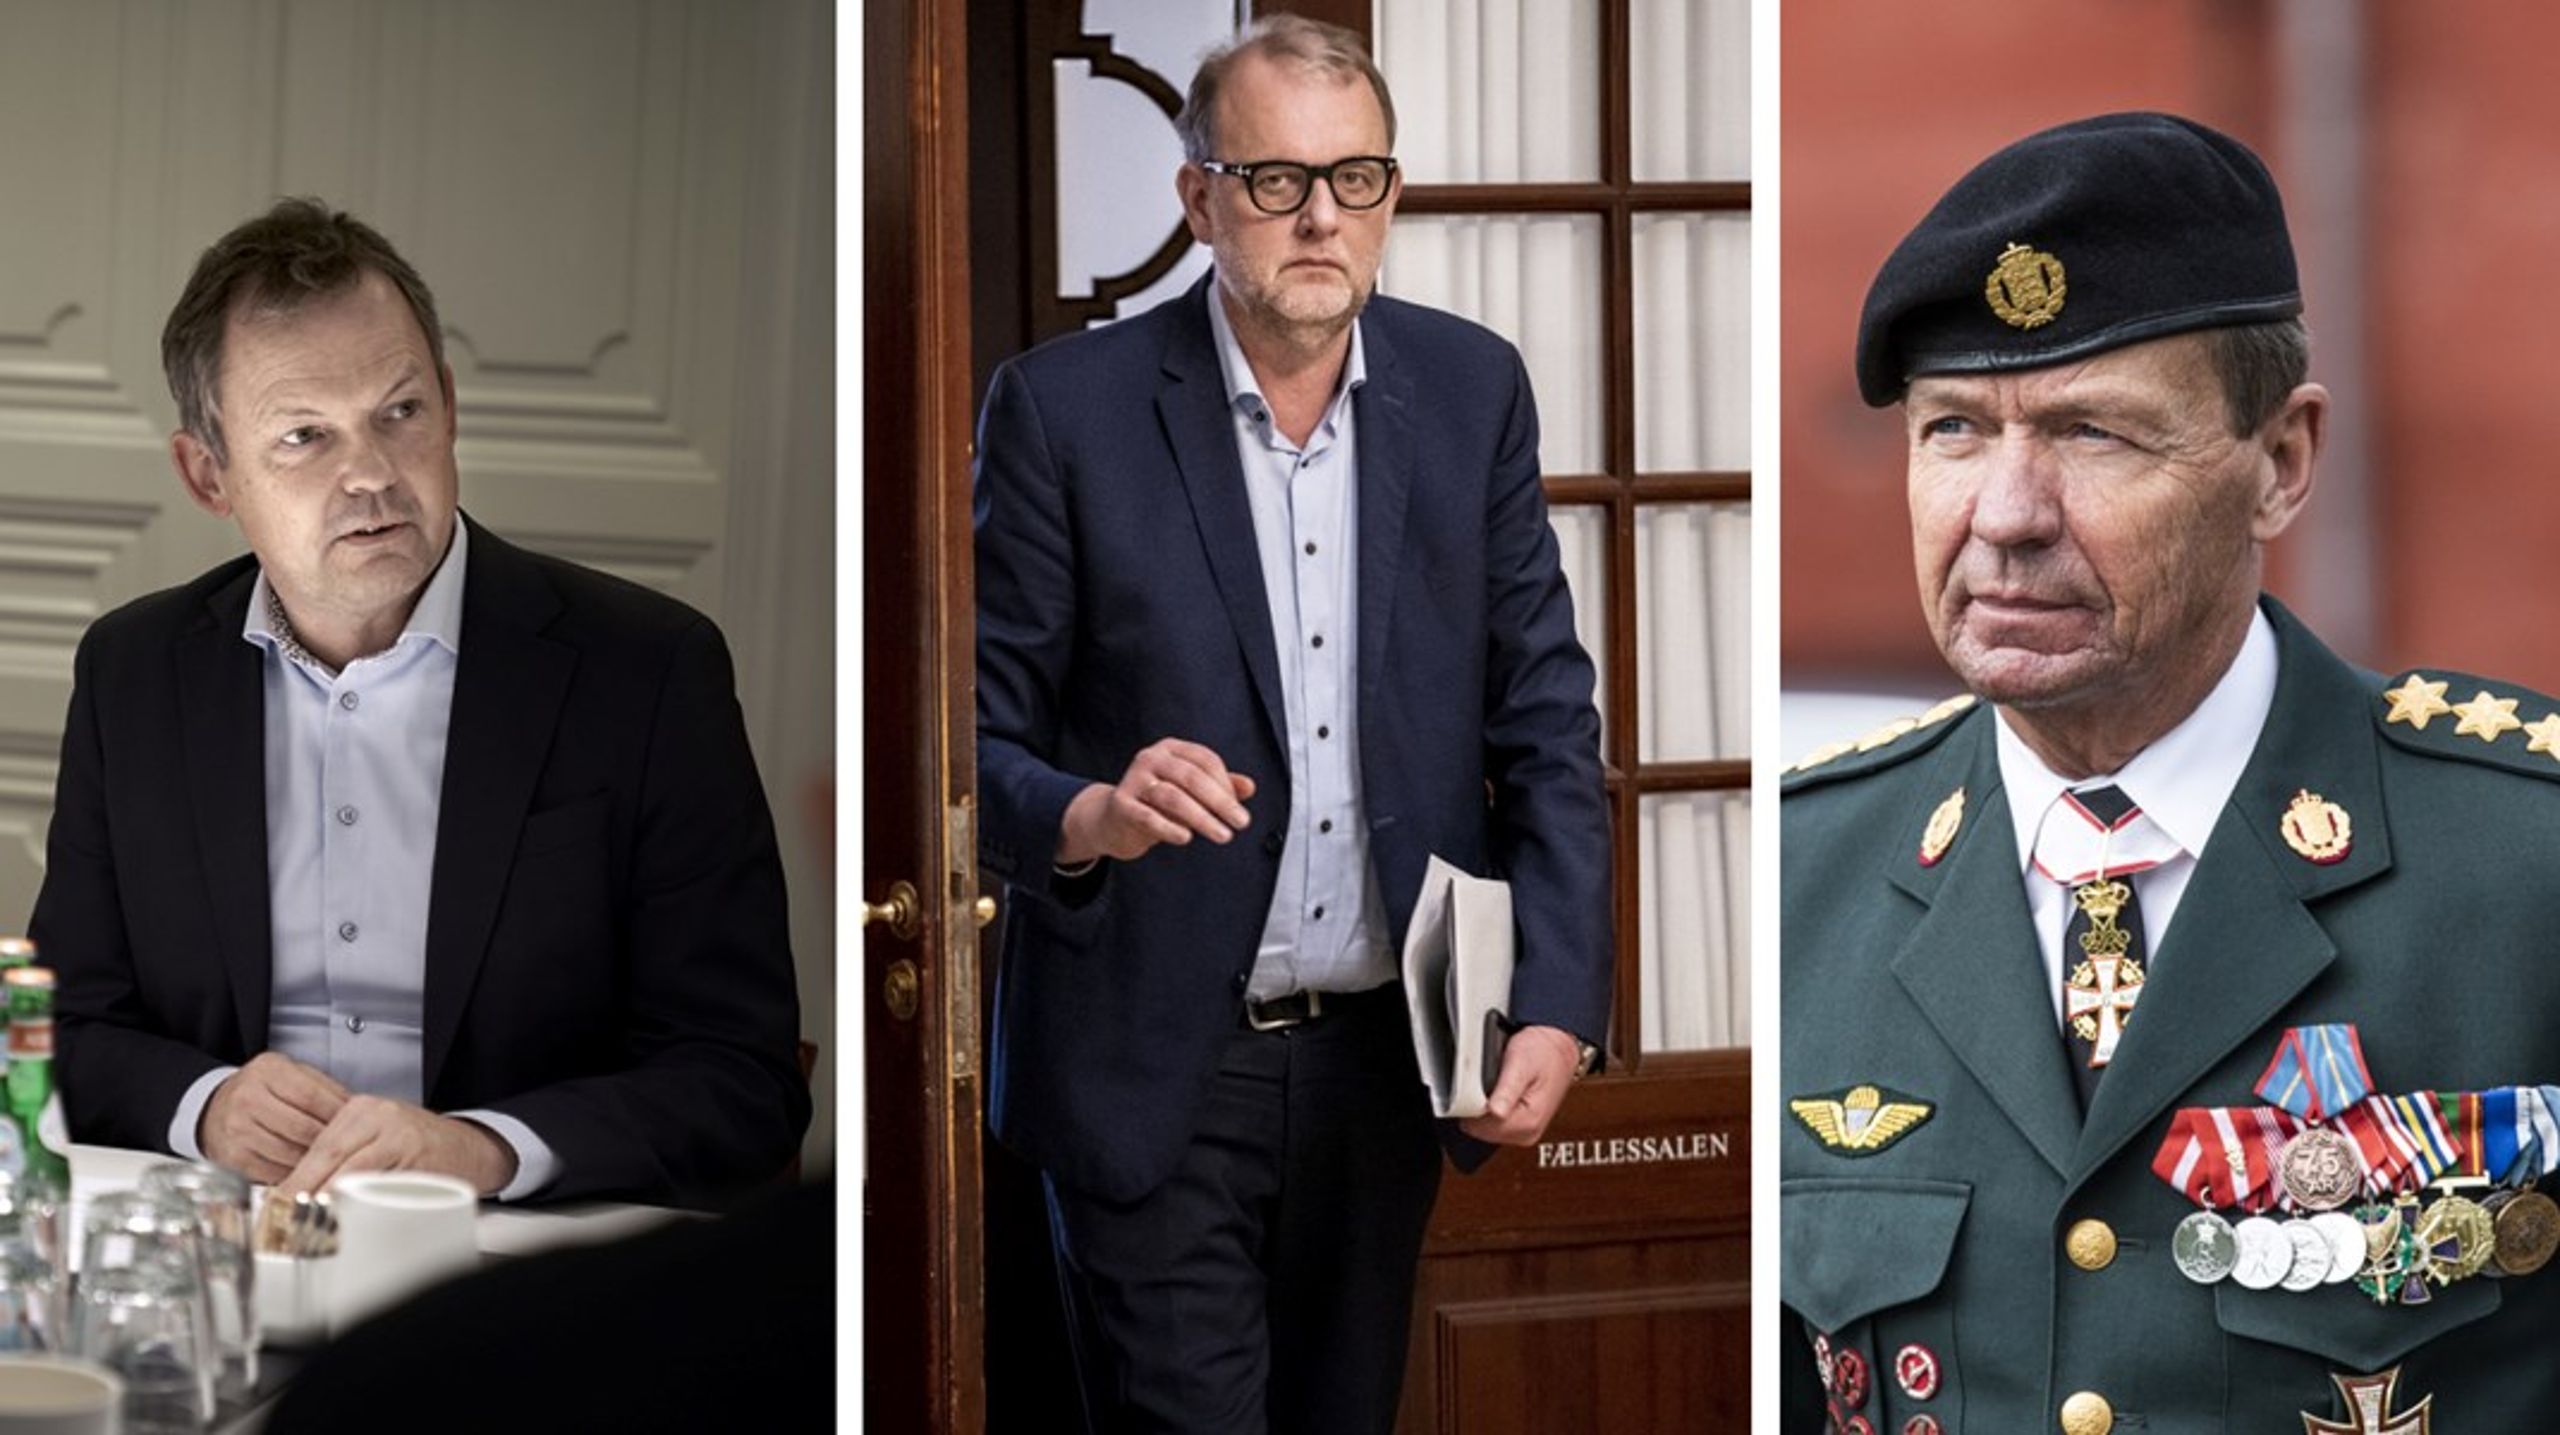 Ulrik Nødgaard, Lars Christian Lilleholt og Bjørn
Bisserup er alle gået fra et offentligt embede til en privat
interesseorganisation.